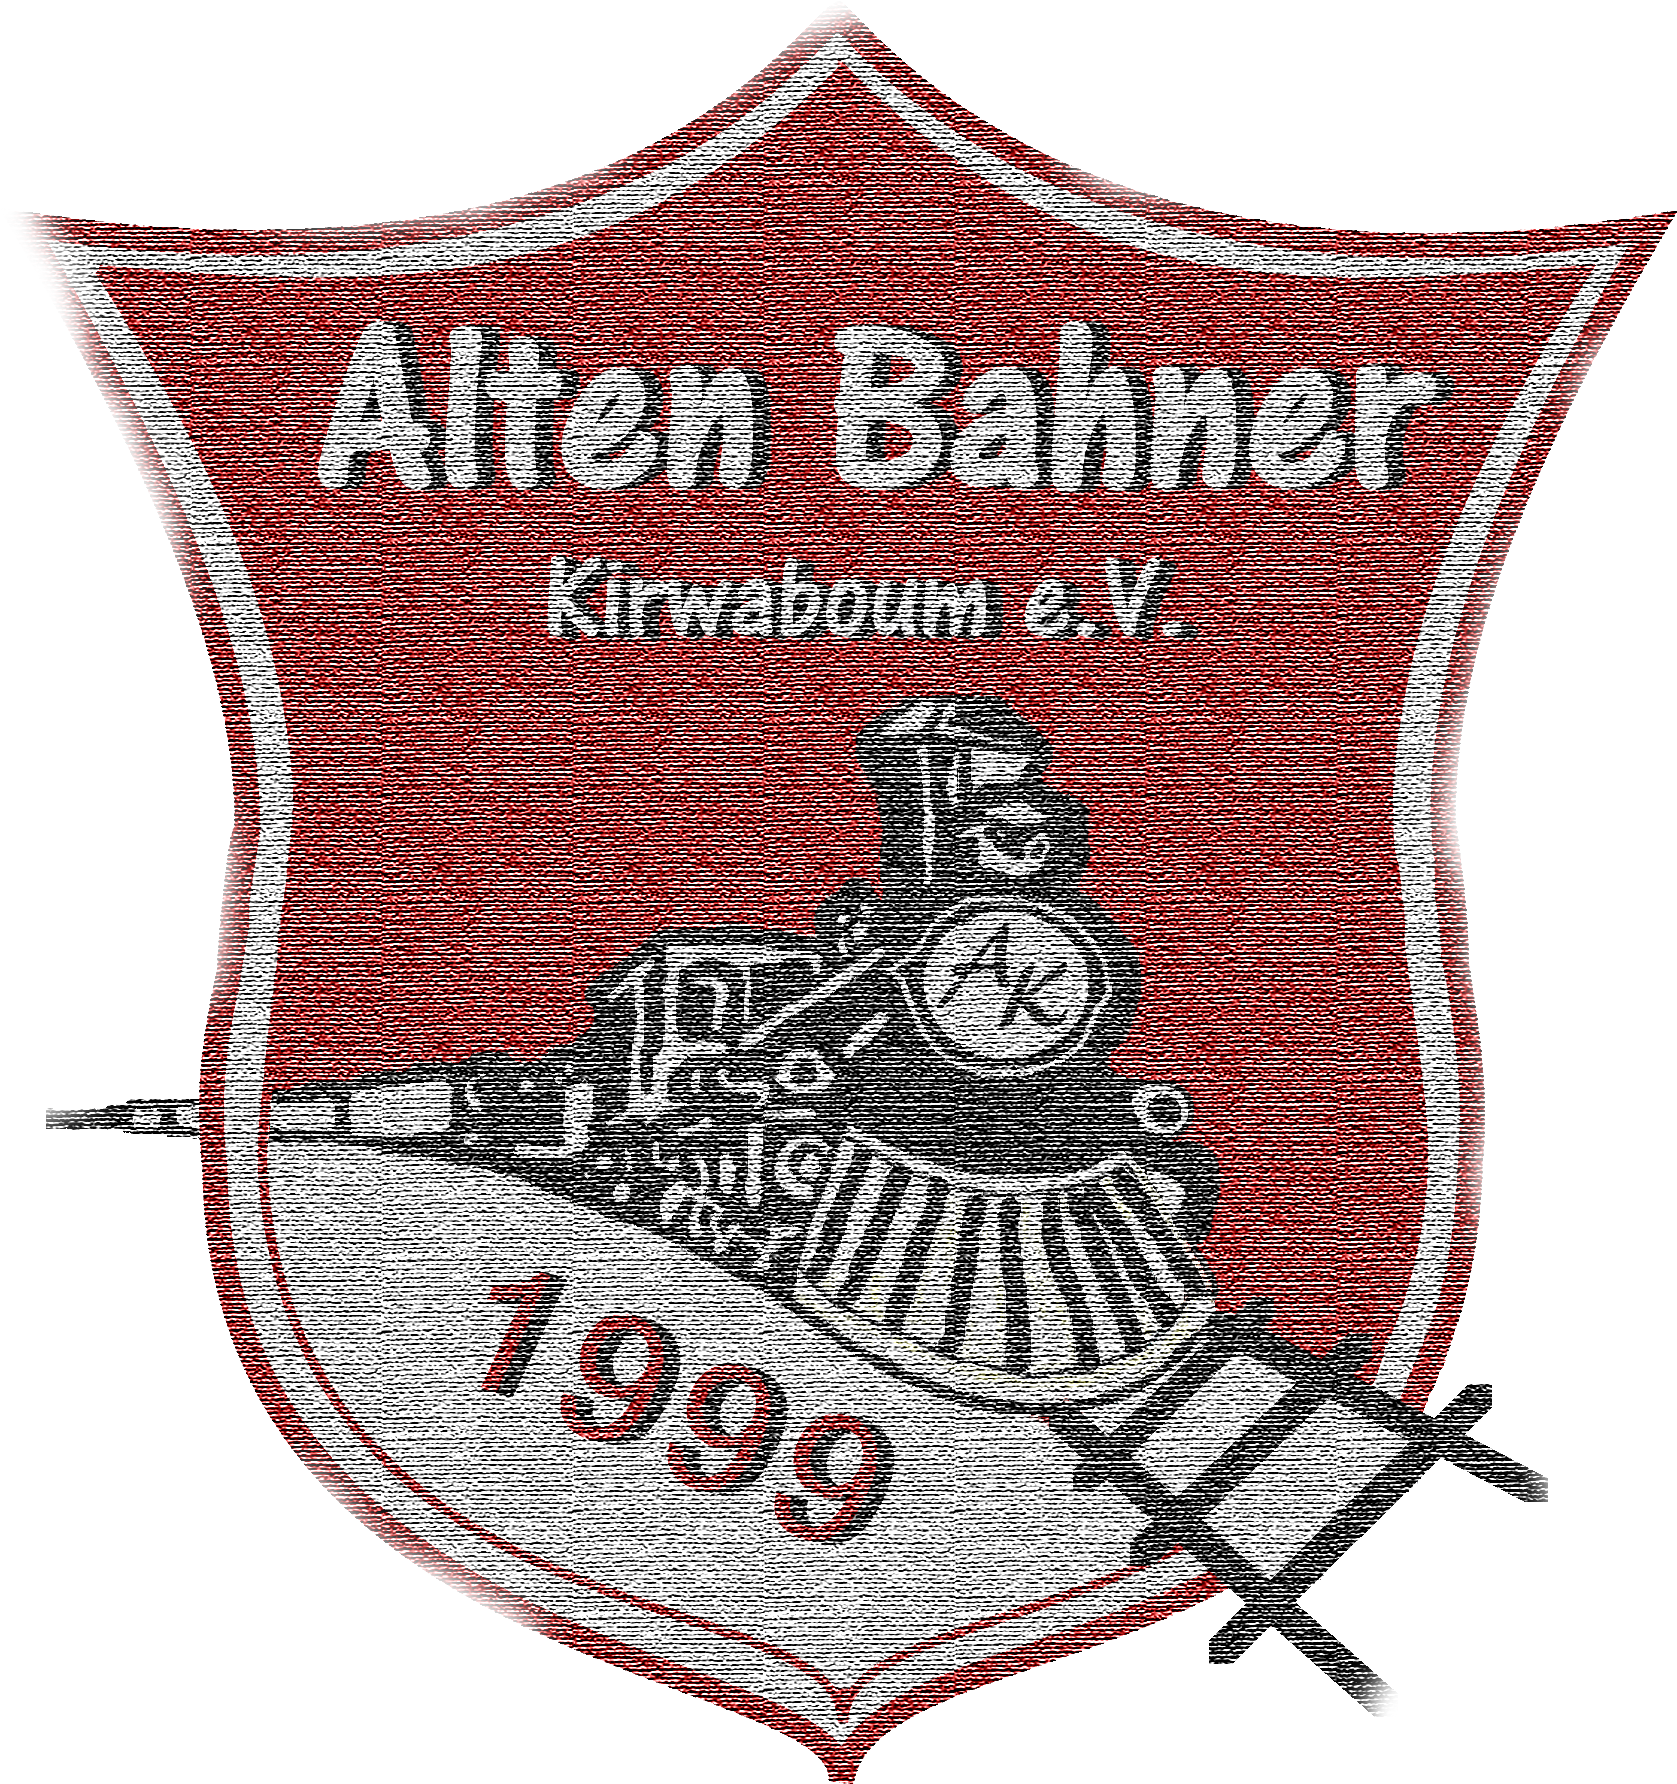 (c) Altenbahner.de